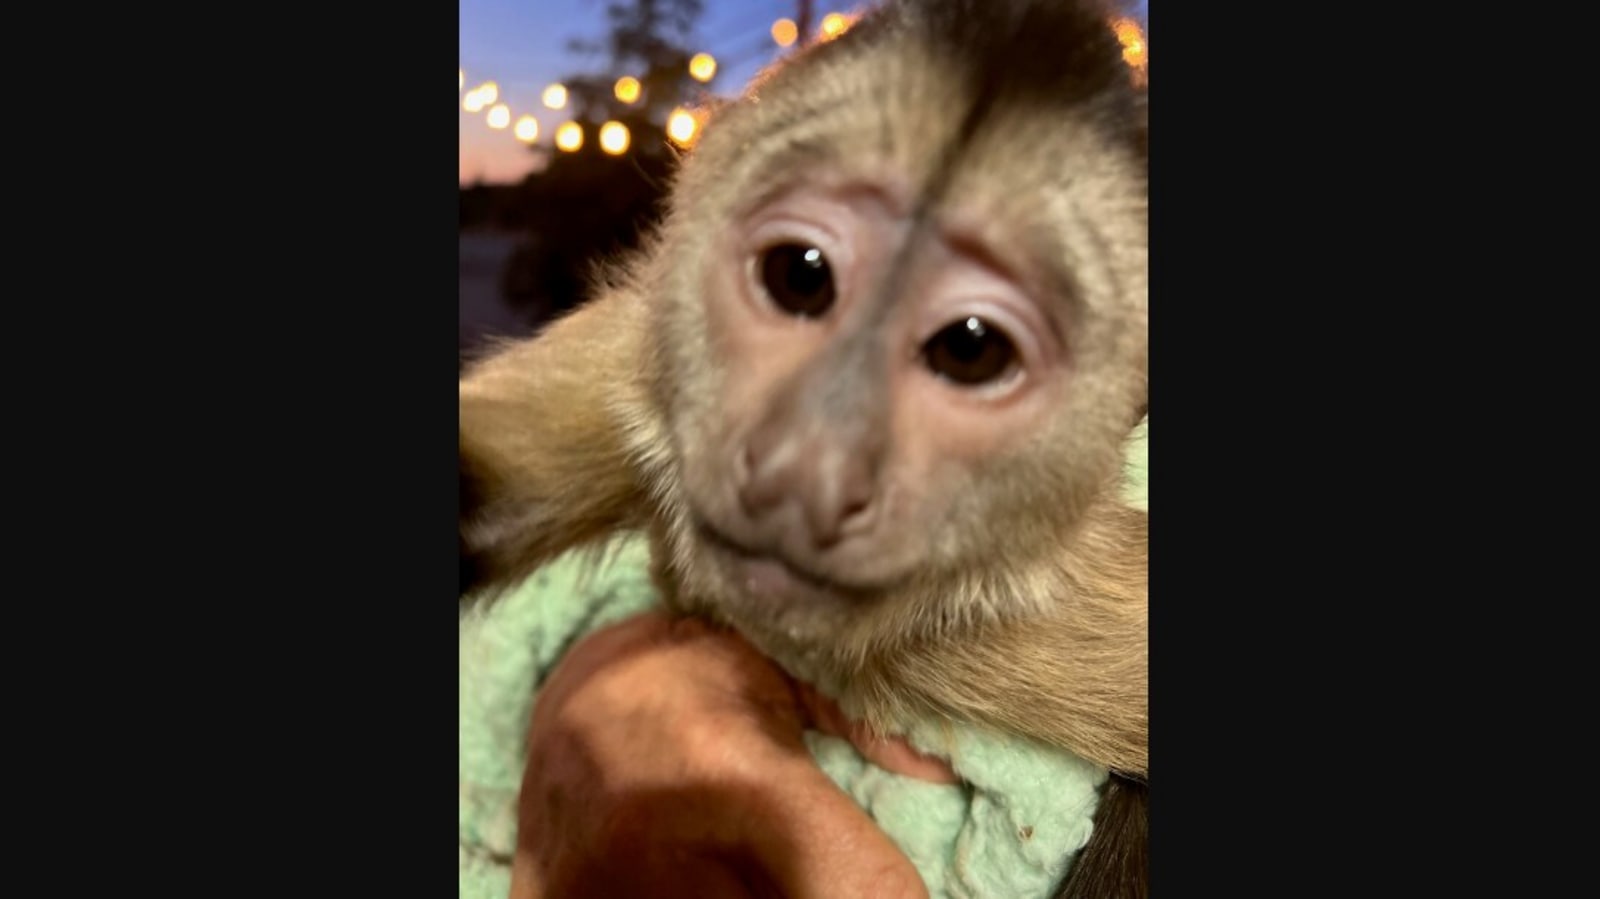 “Kasus monyet”: panggilan darurat dari kebun binatang membuat polisi bingung.  Inilah alasannya |  Kecenderungan